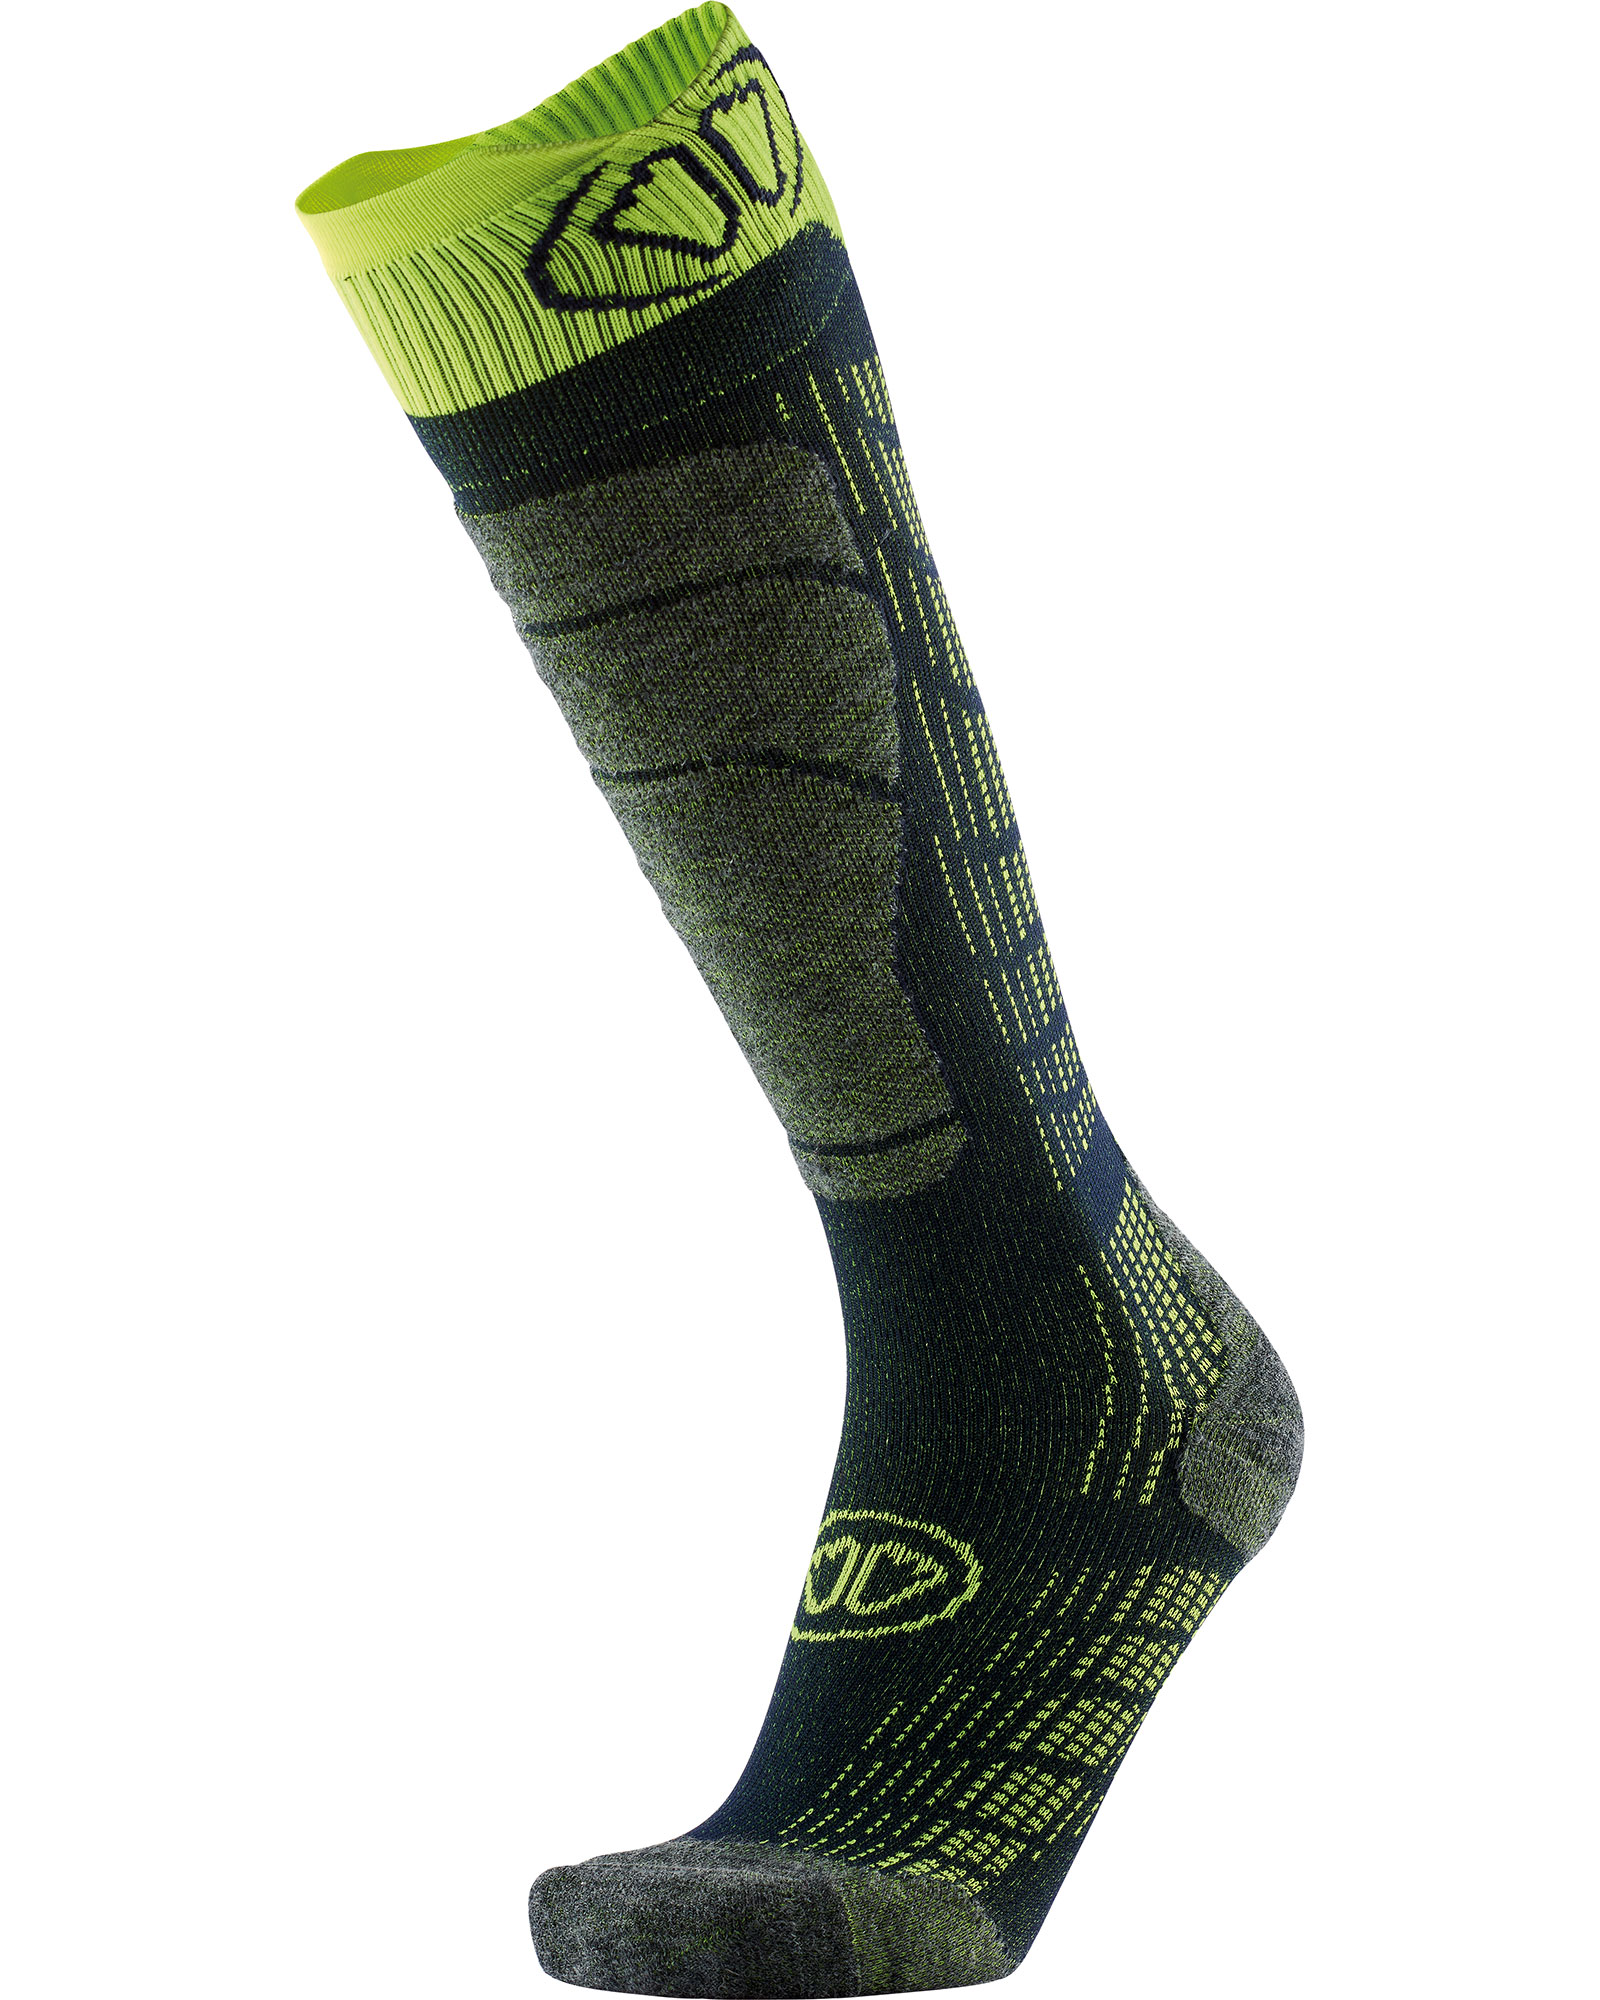 Sidas Ski Comfort Socks - Black/Yellow L